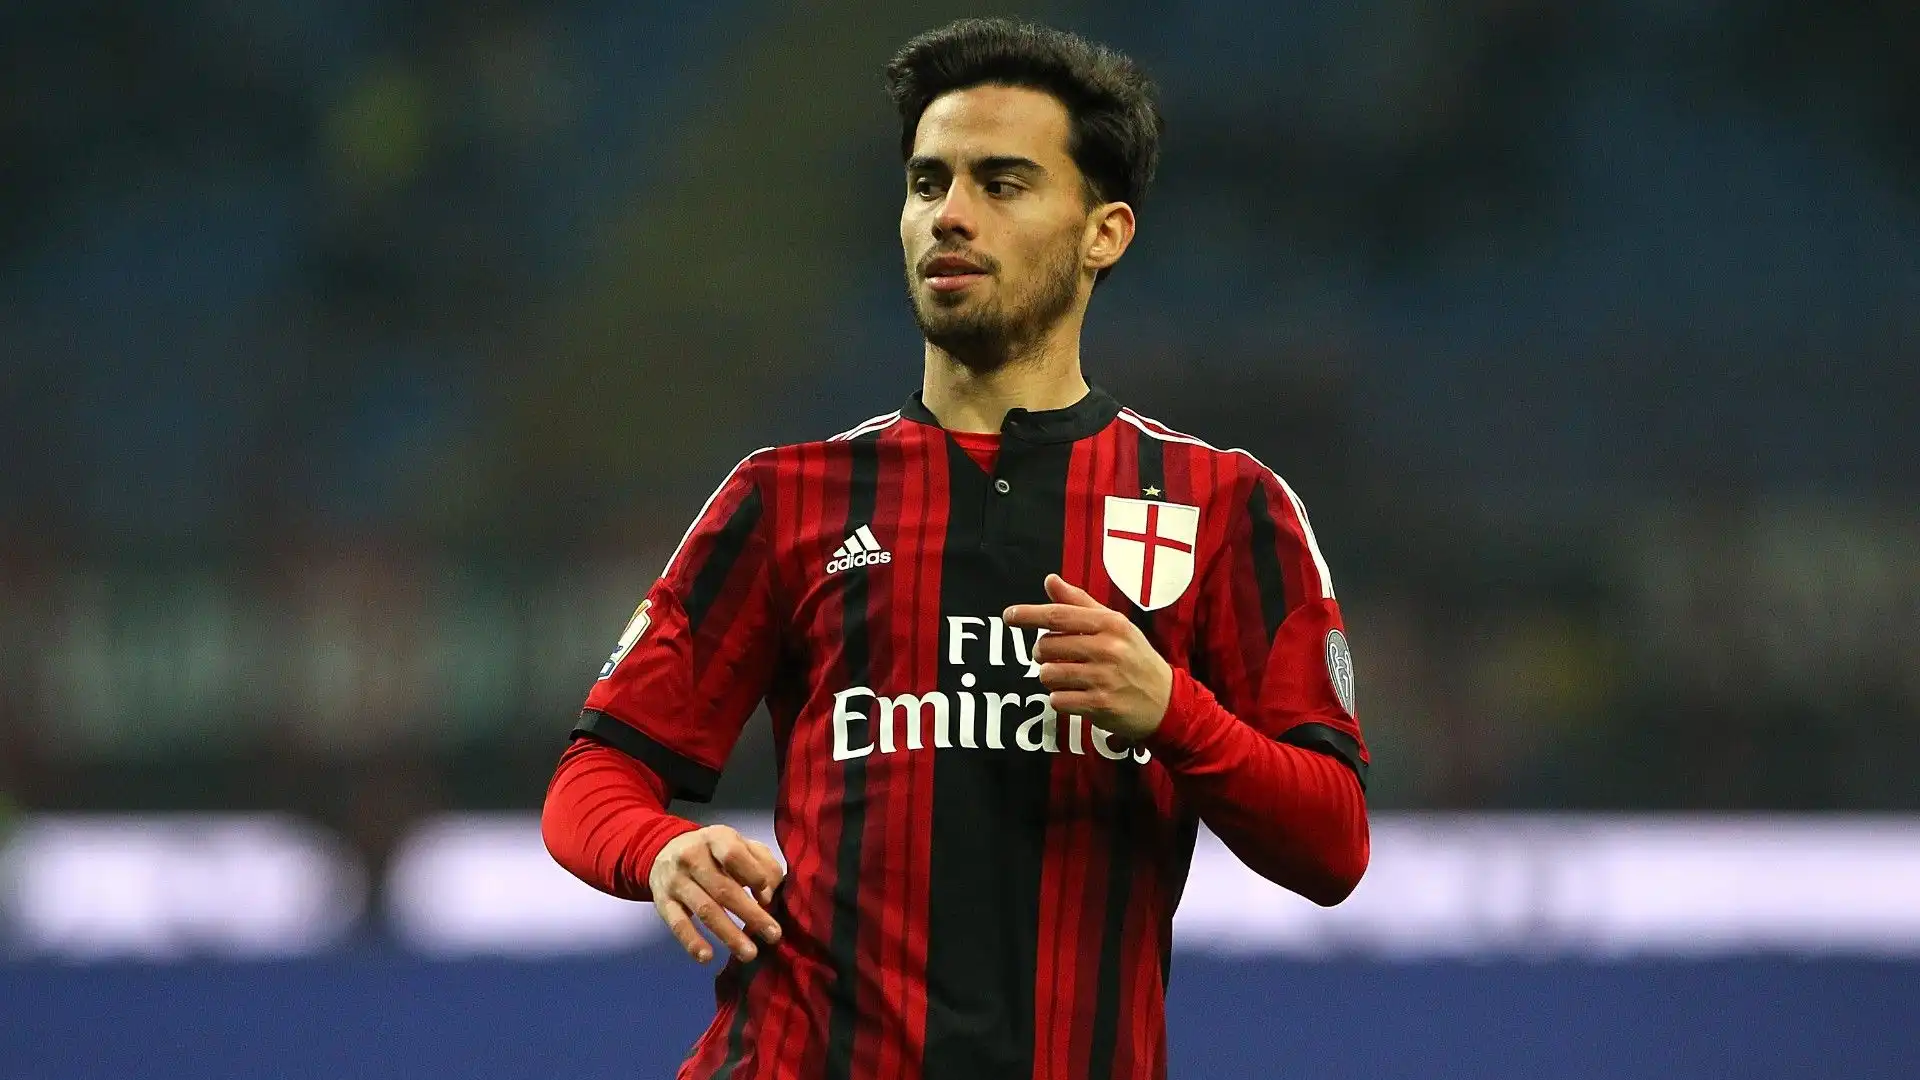 Il Milan l'ha acquistato nel 2015 per poco più di un milione di euro